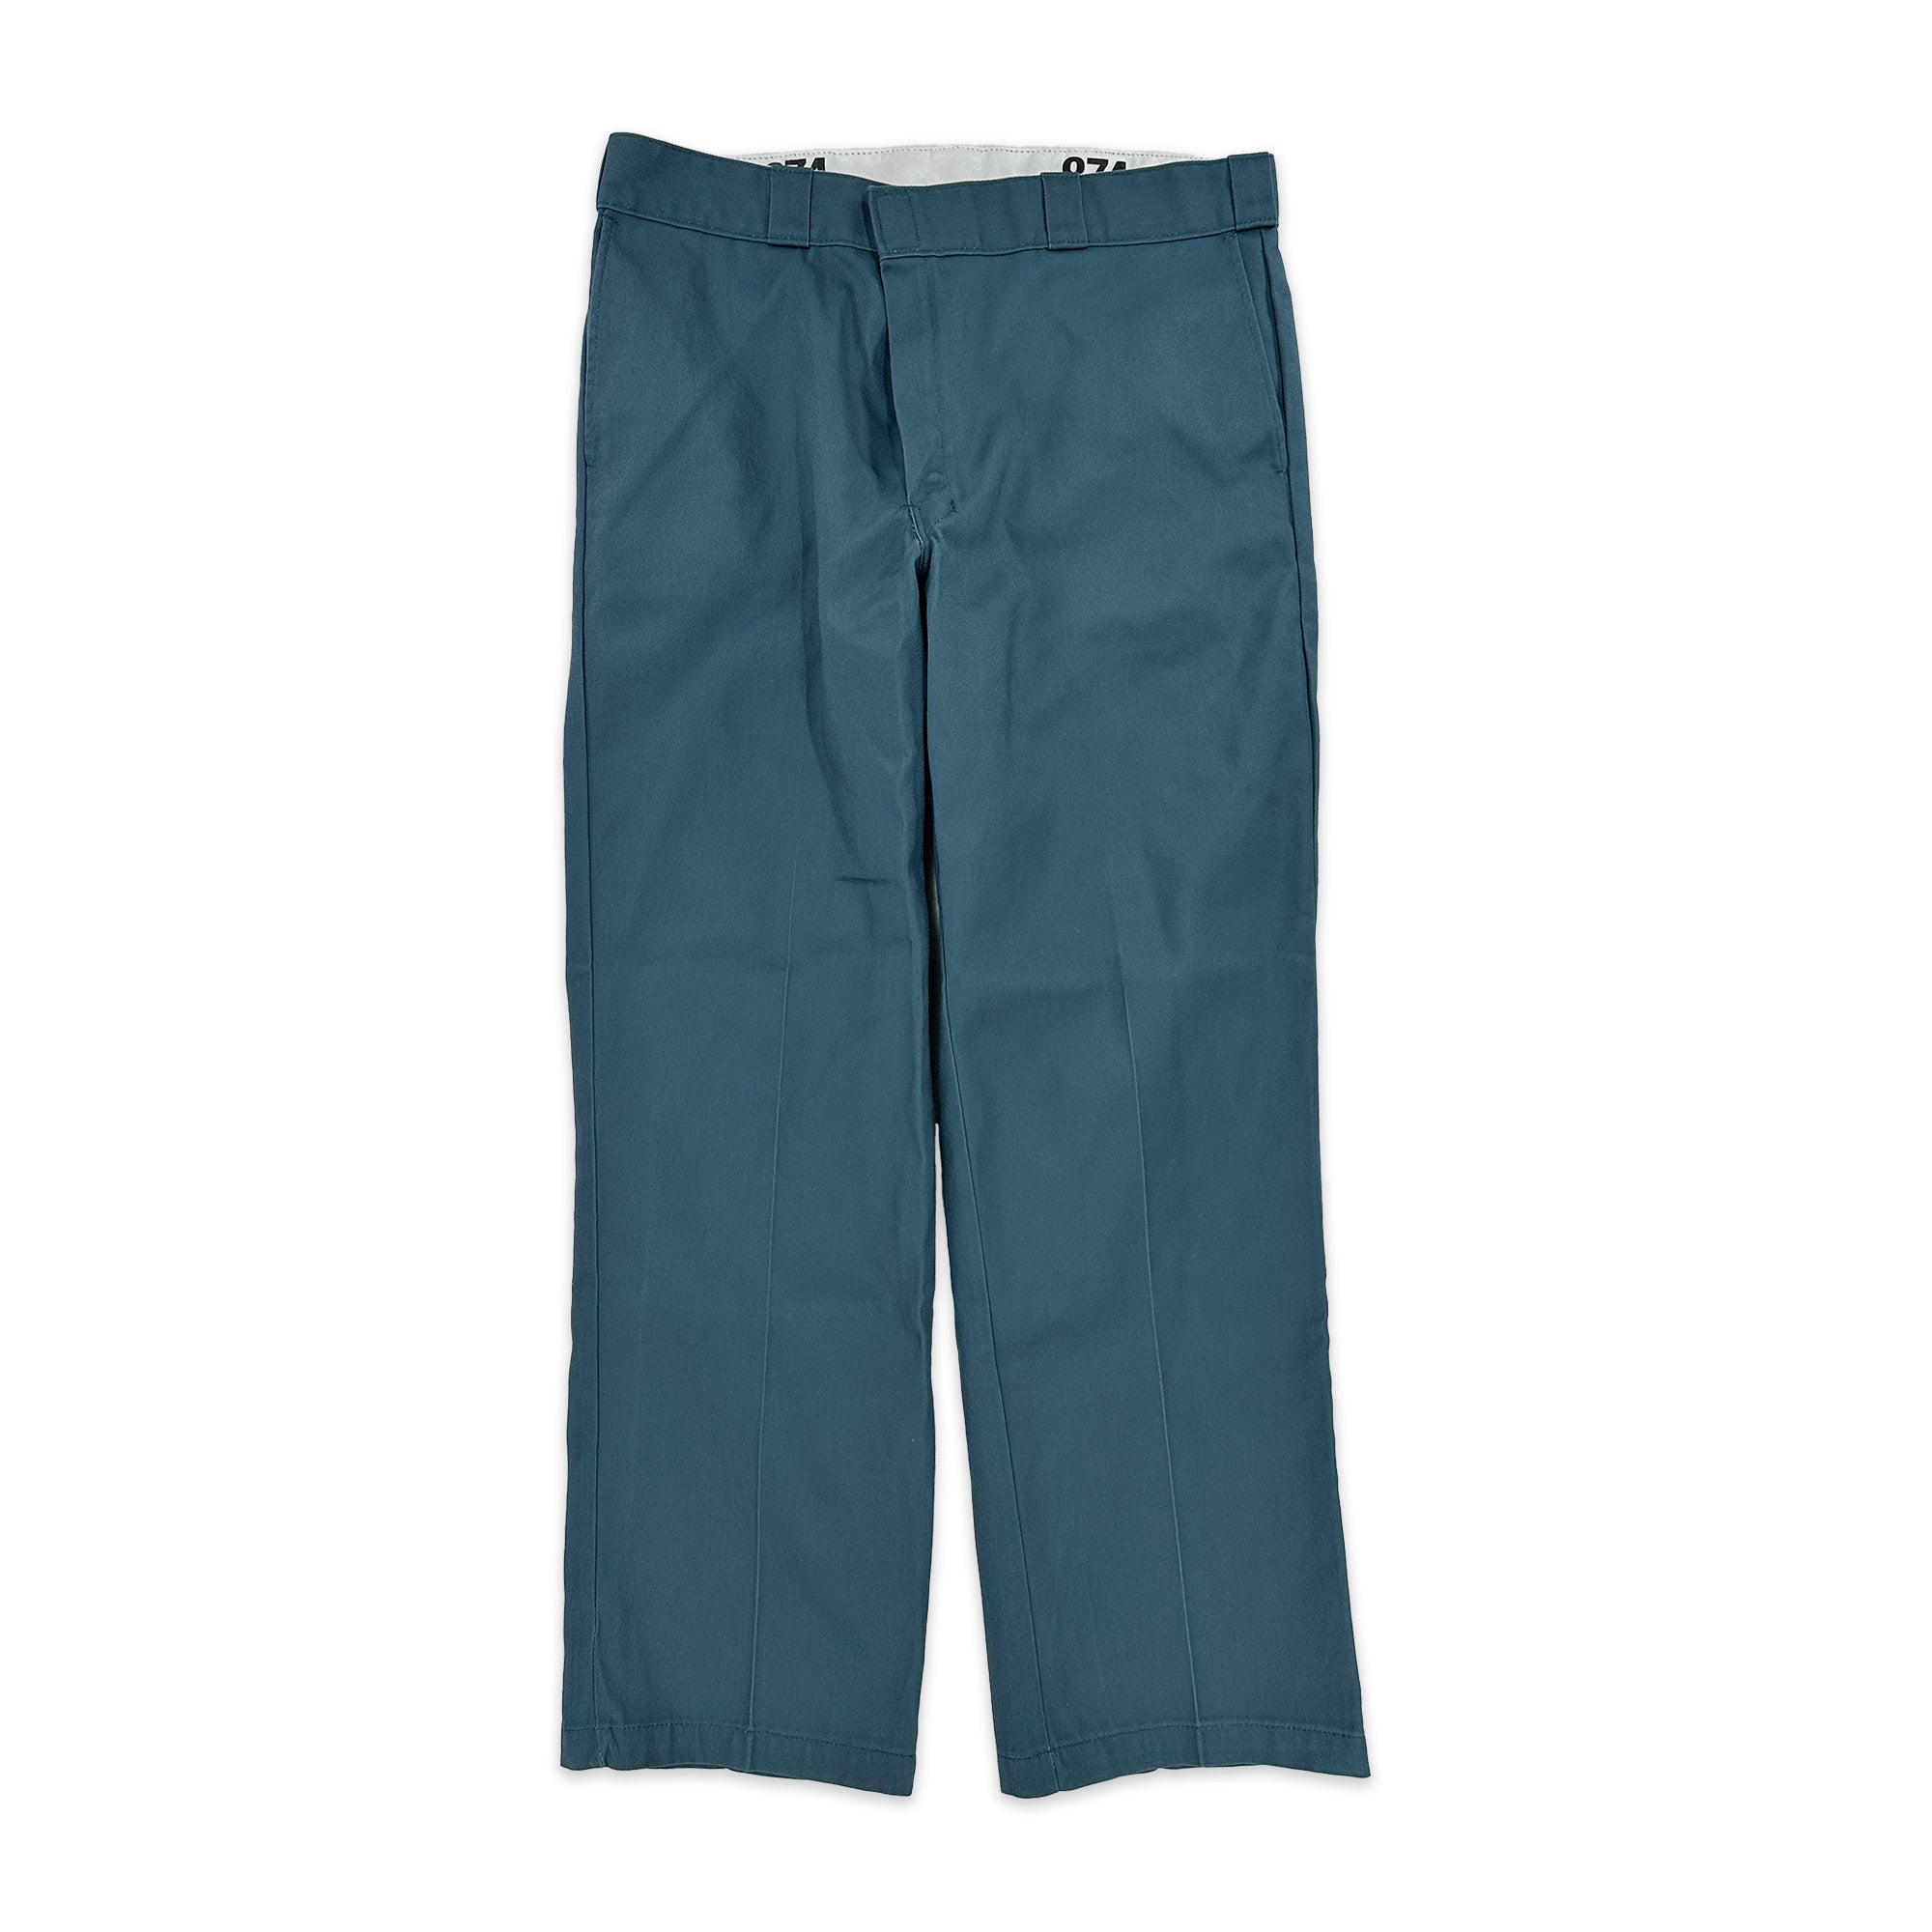 Dickies Original 874 Work Pants in Lincoln Green - Men's 38x30